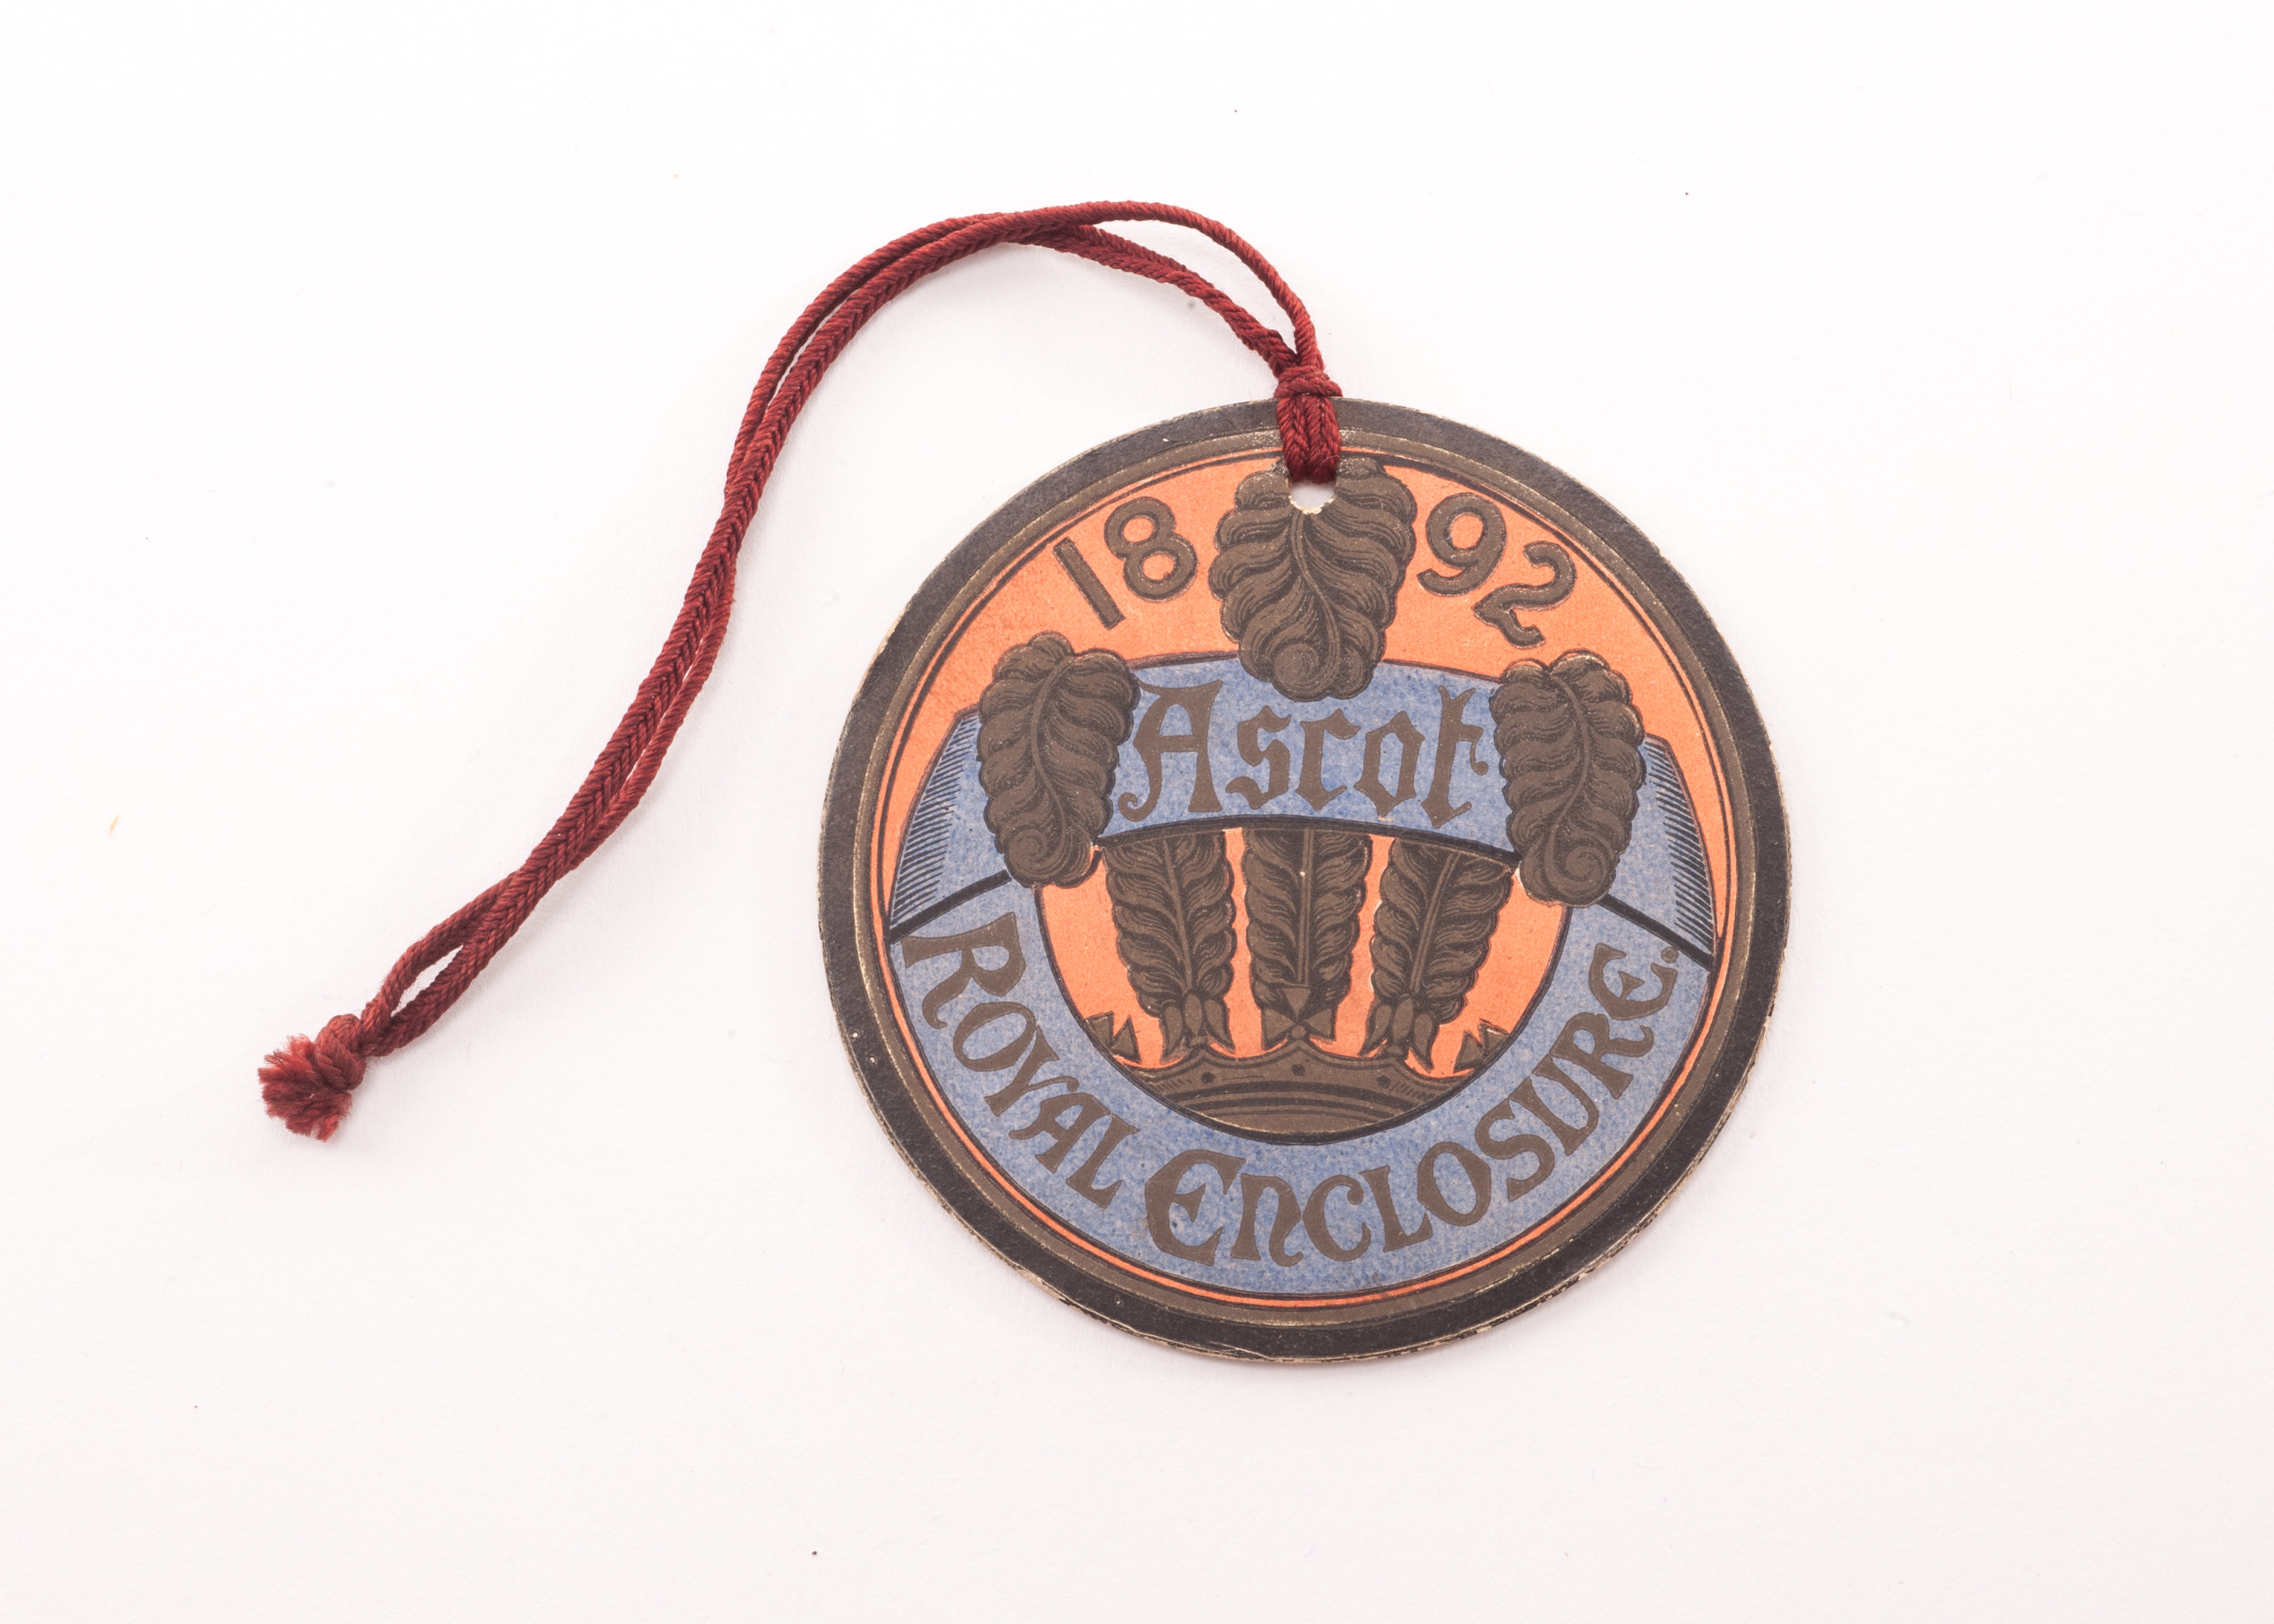 Horseracing: Royal Ascot Royal Enclosure badge, circular card badge with red cord, dated 1892 to